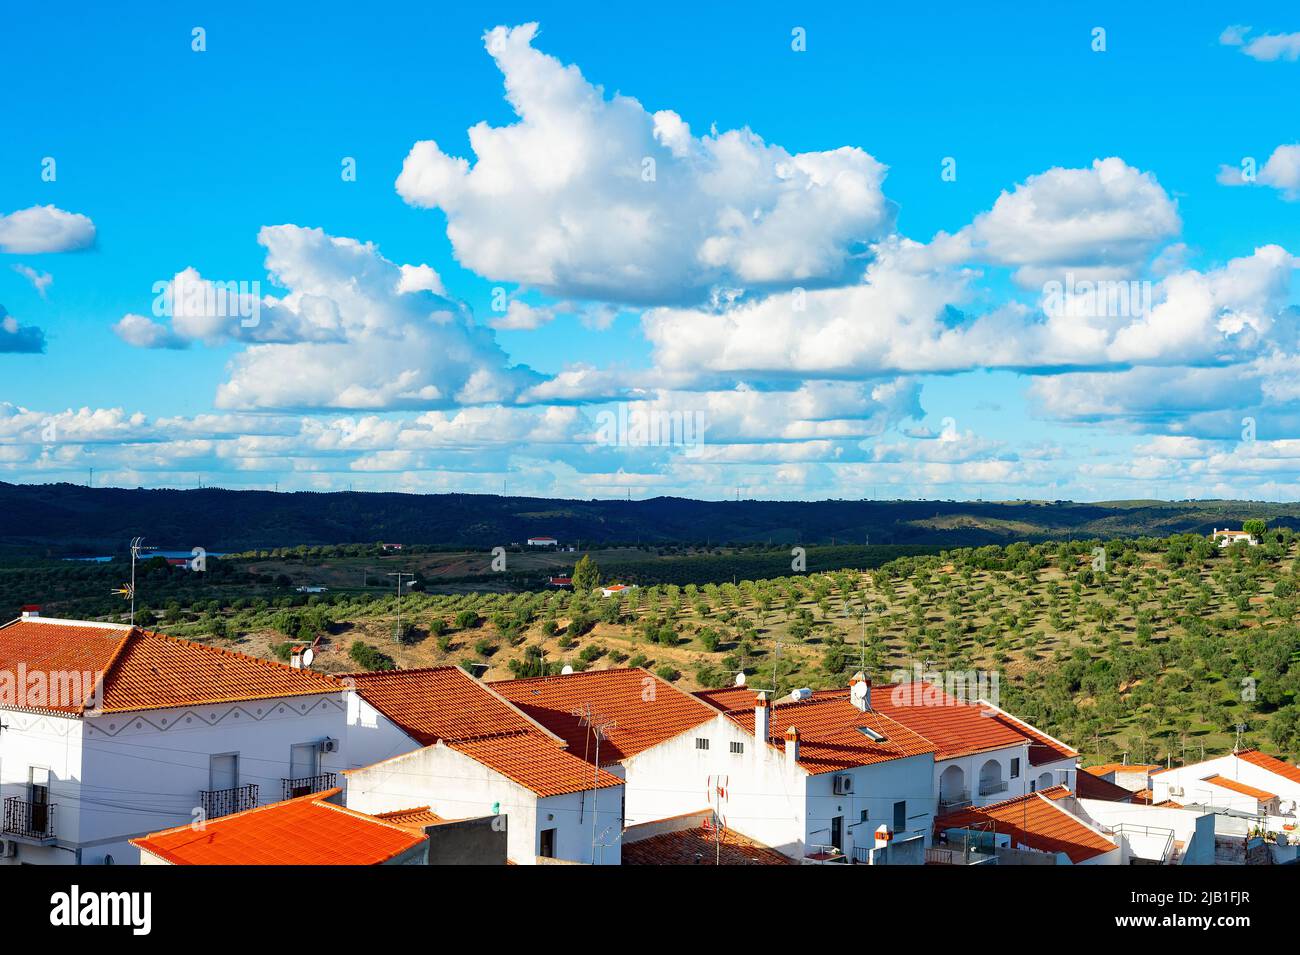 Paisaje natural con vista al pueblo y a los jardines de olivo, montañas y nubes, España Foto de stock